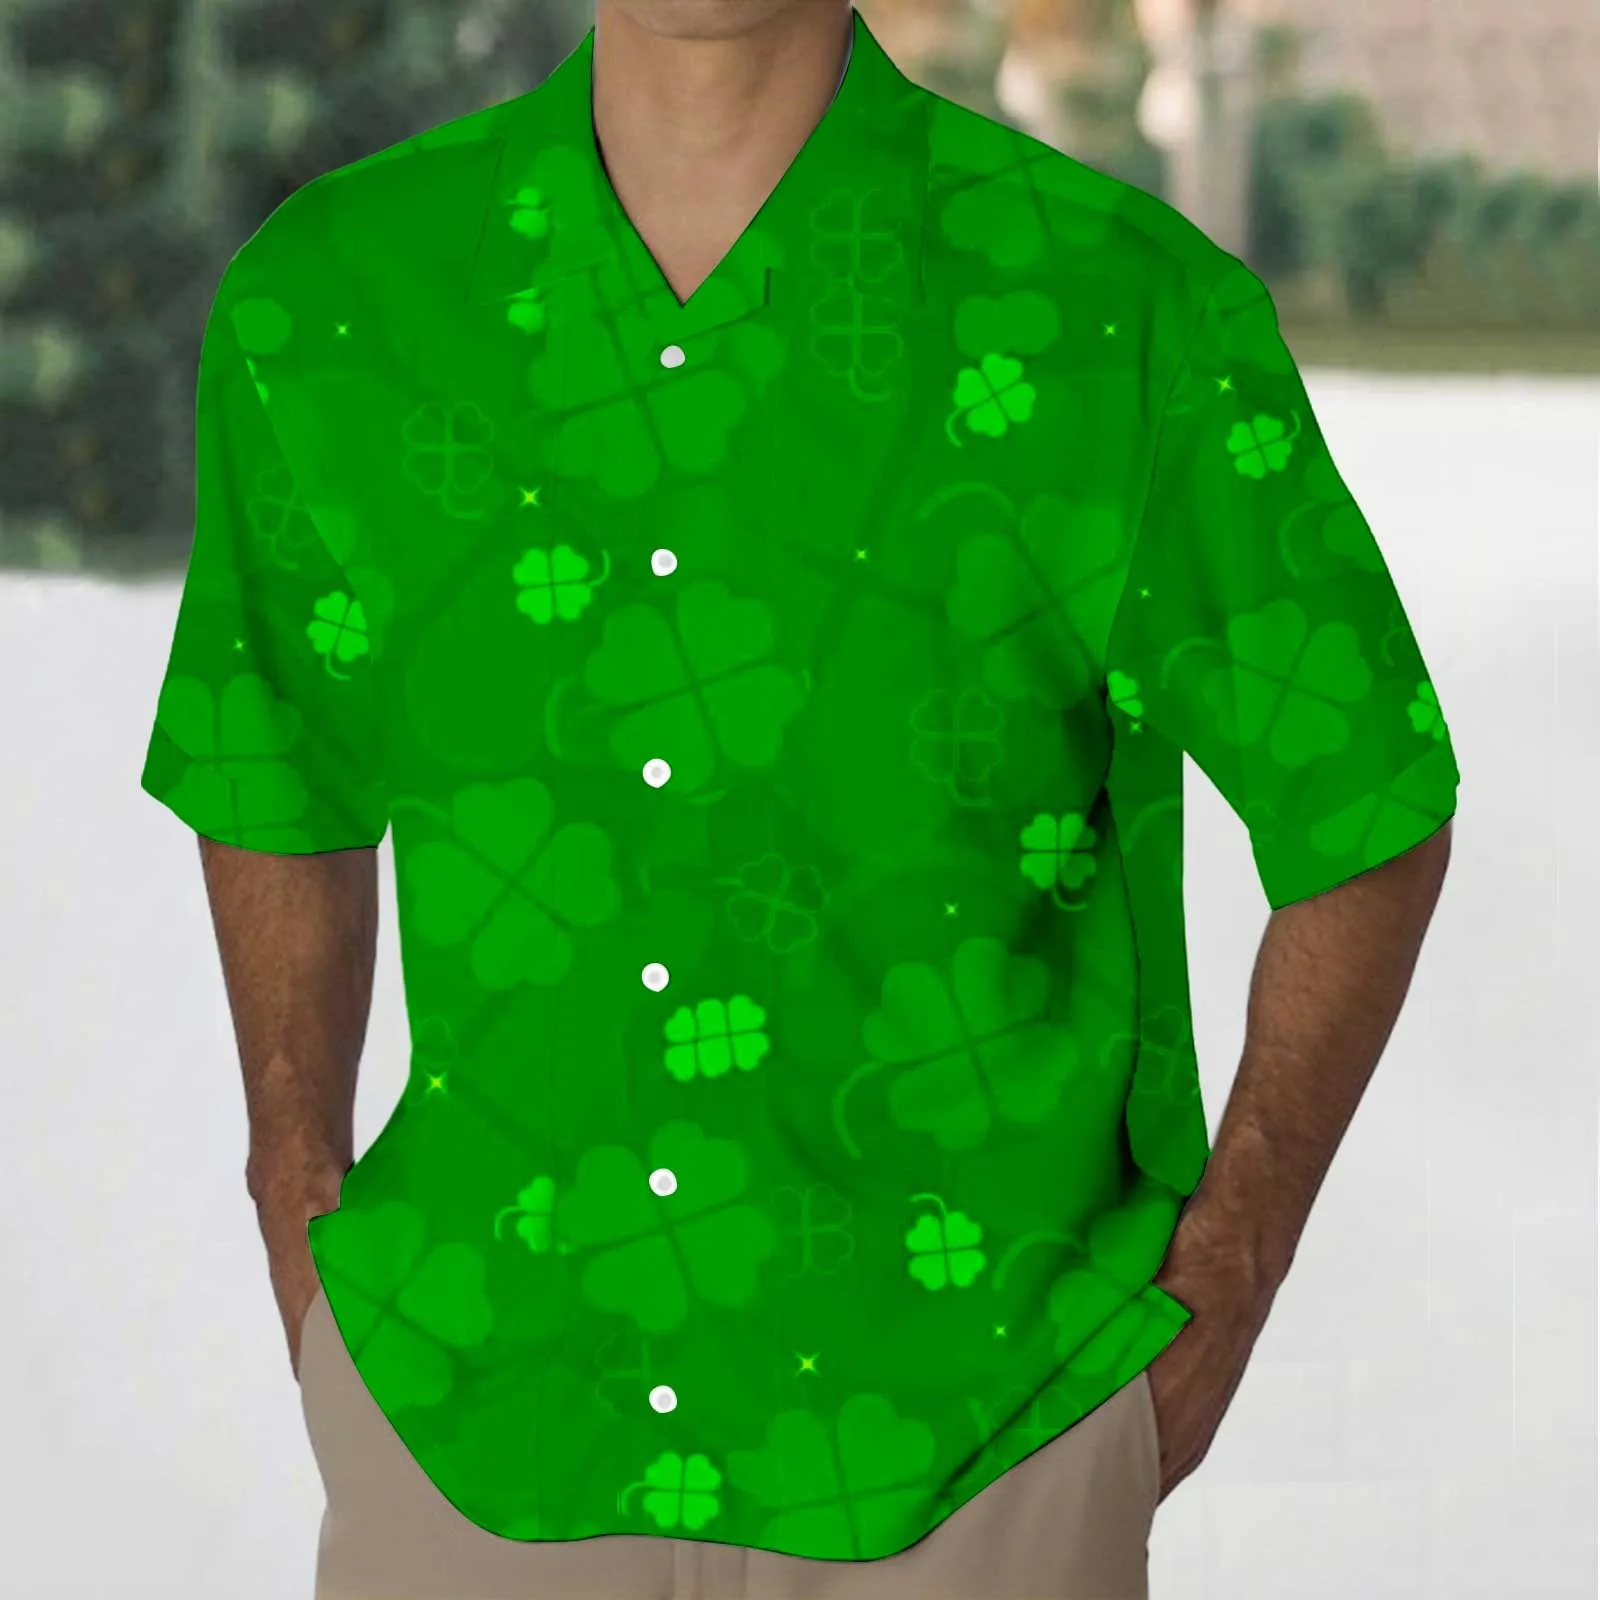 

Мужская однобортная рубашка с принтом, зеленая Свободная Повседневная рубашка с коротким рукавом, отложным воротником, на пуговицах, лето 2019